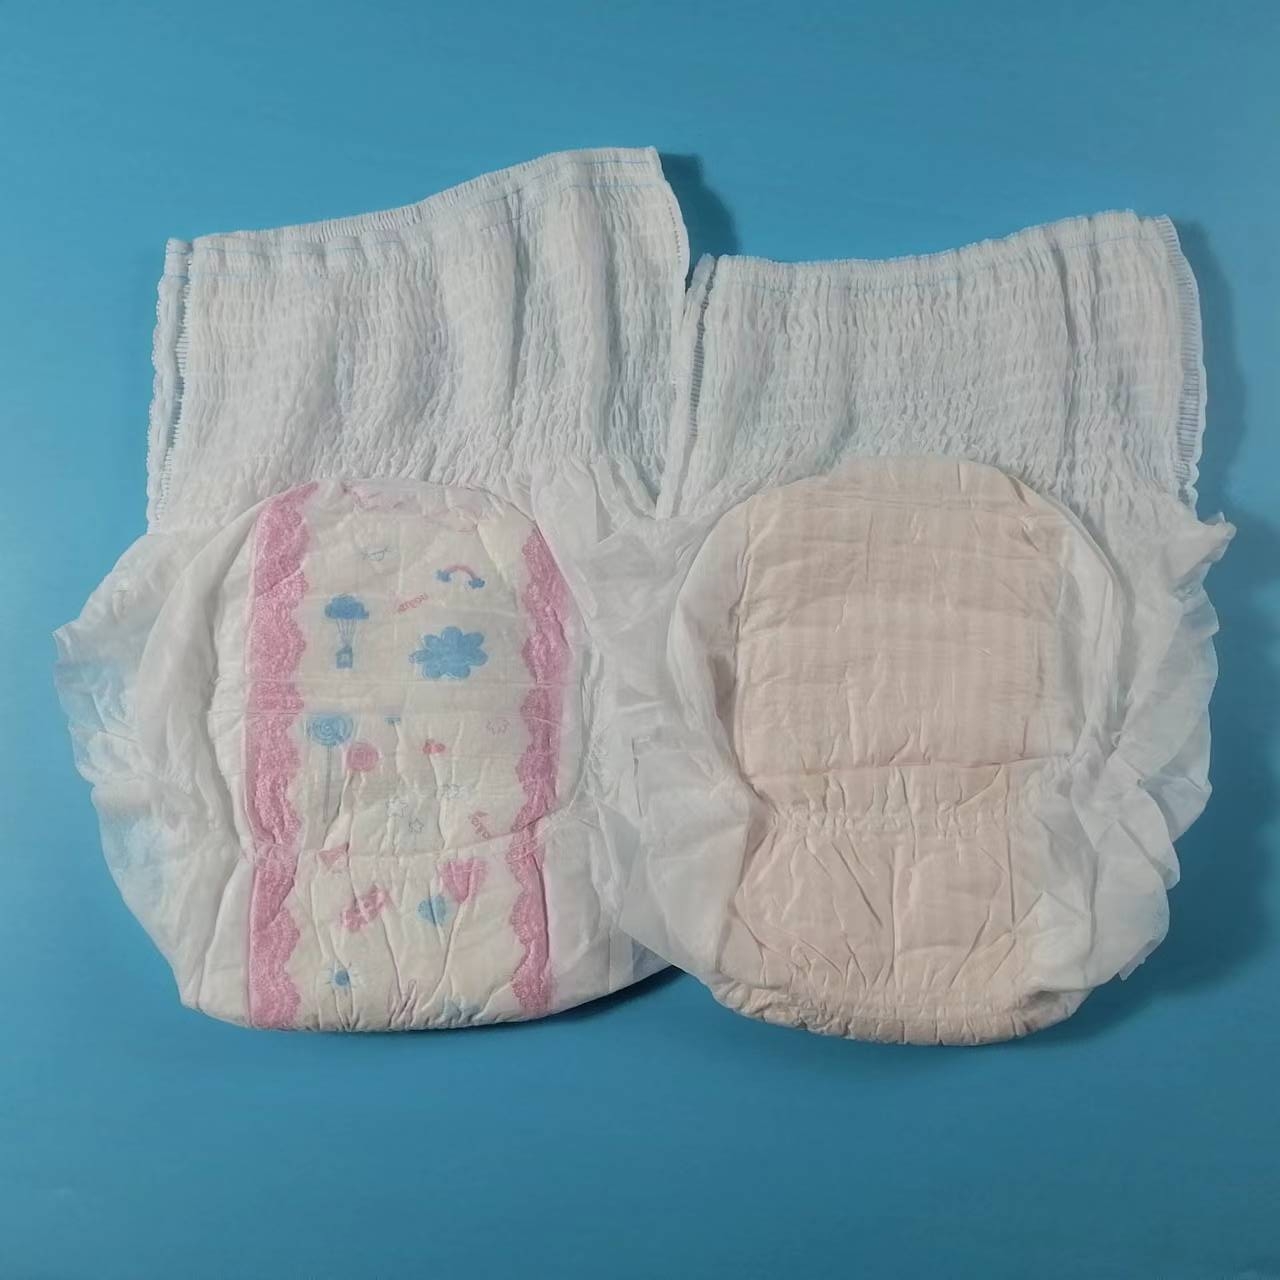 Precio bajo Mejor calidad Pantalones menstruales desechables Servilleta sanitaria tipo panty con superficie suave y saludable Imagen destacada